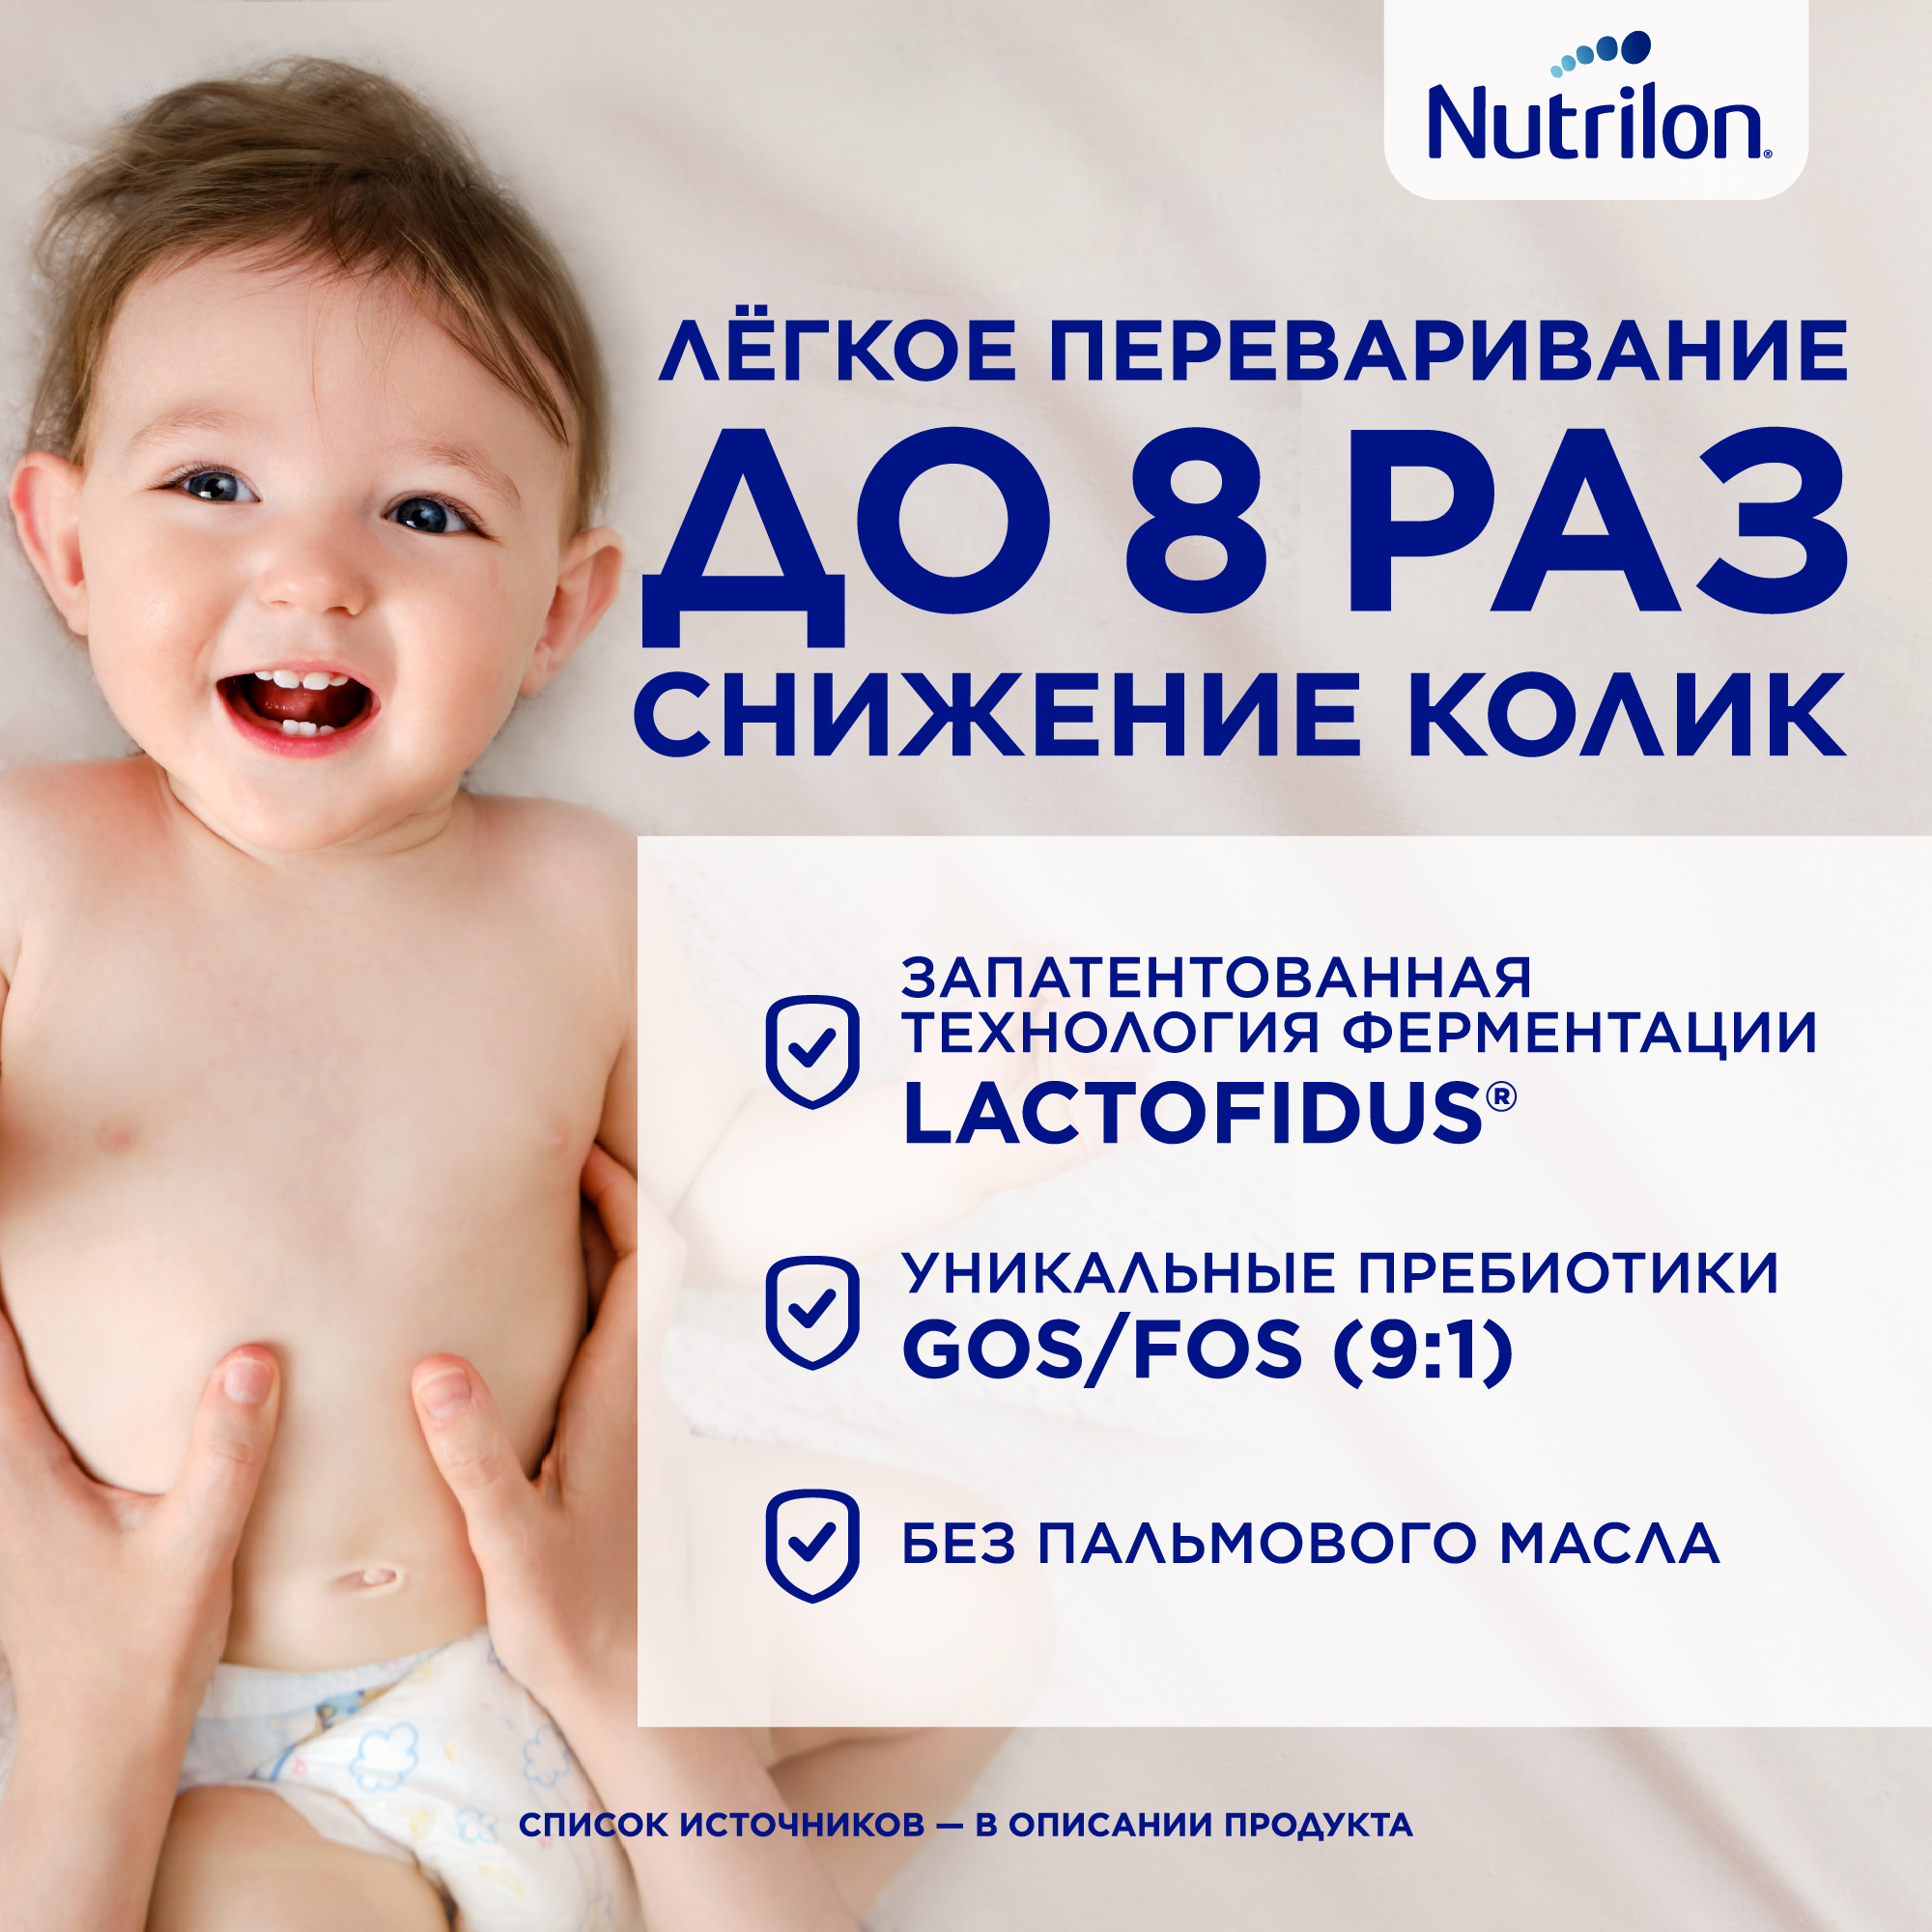 Смесь Nutrilon 2 Premium молочная, 1200 г - фото №4